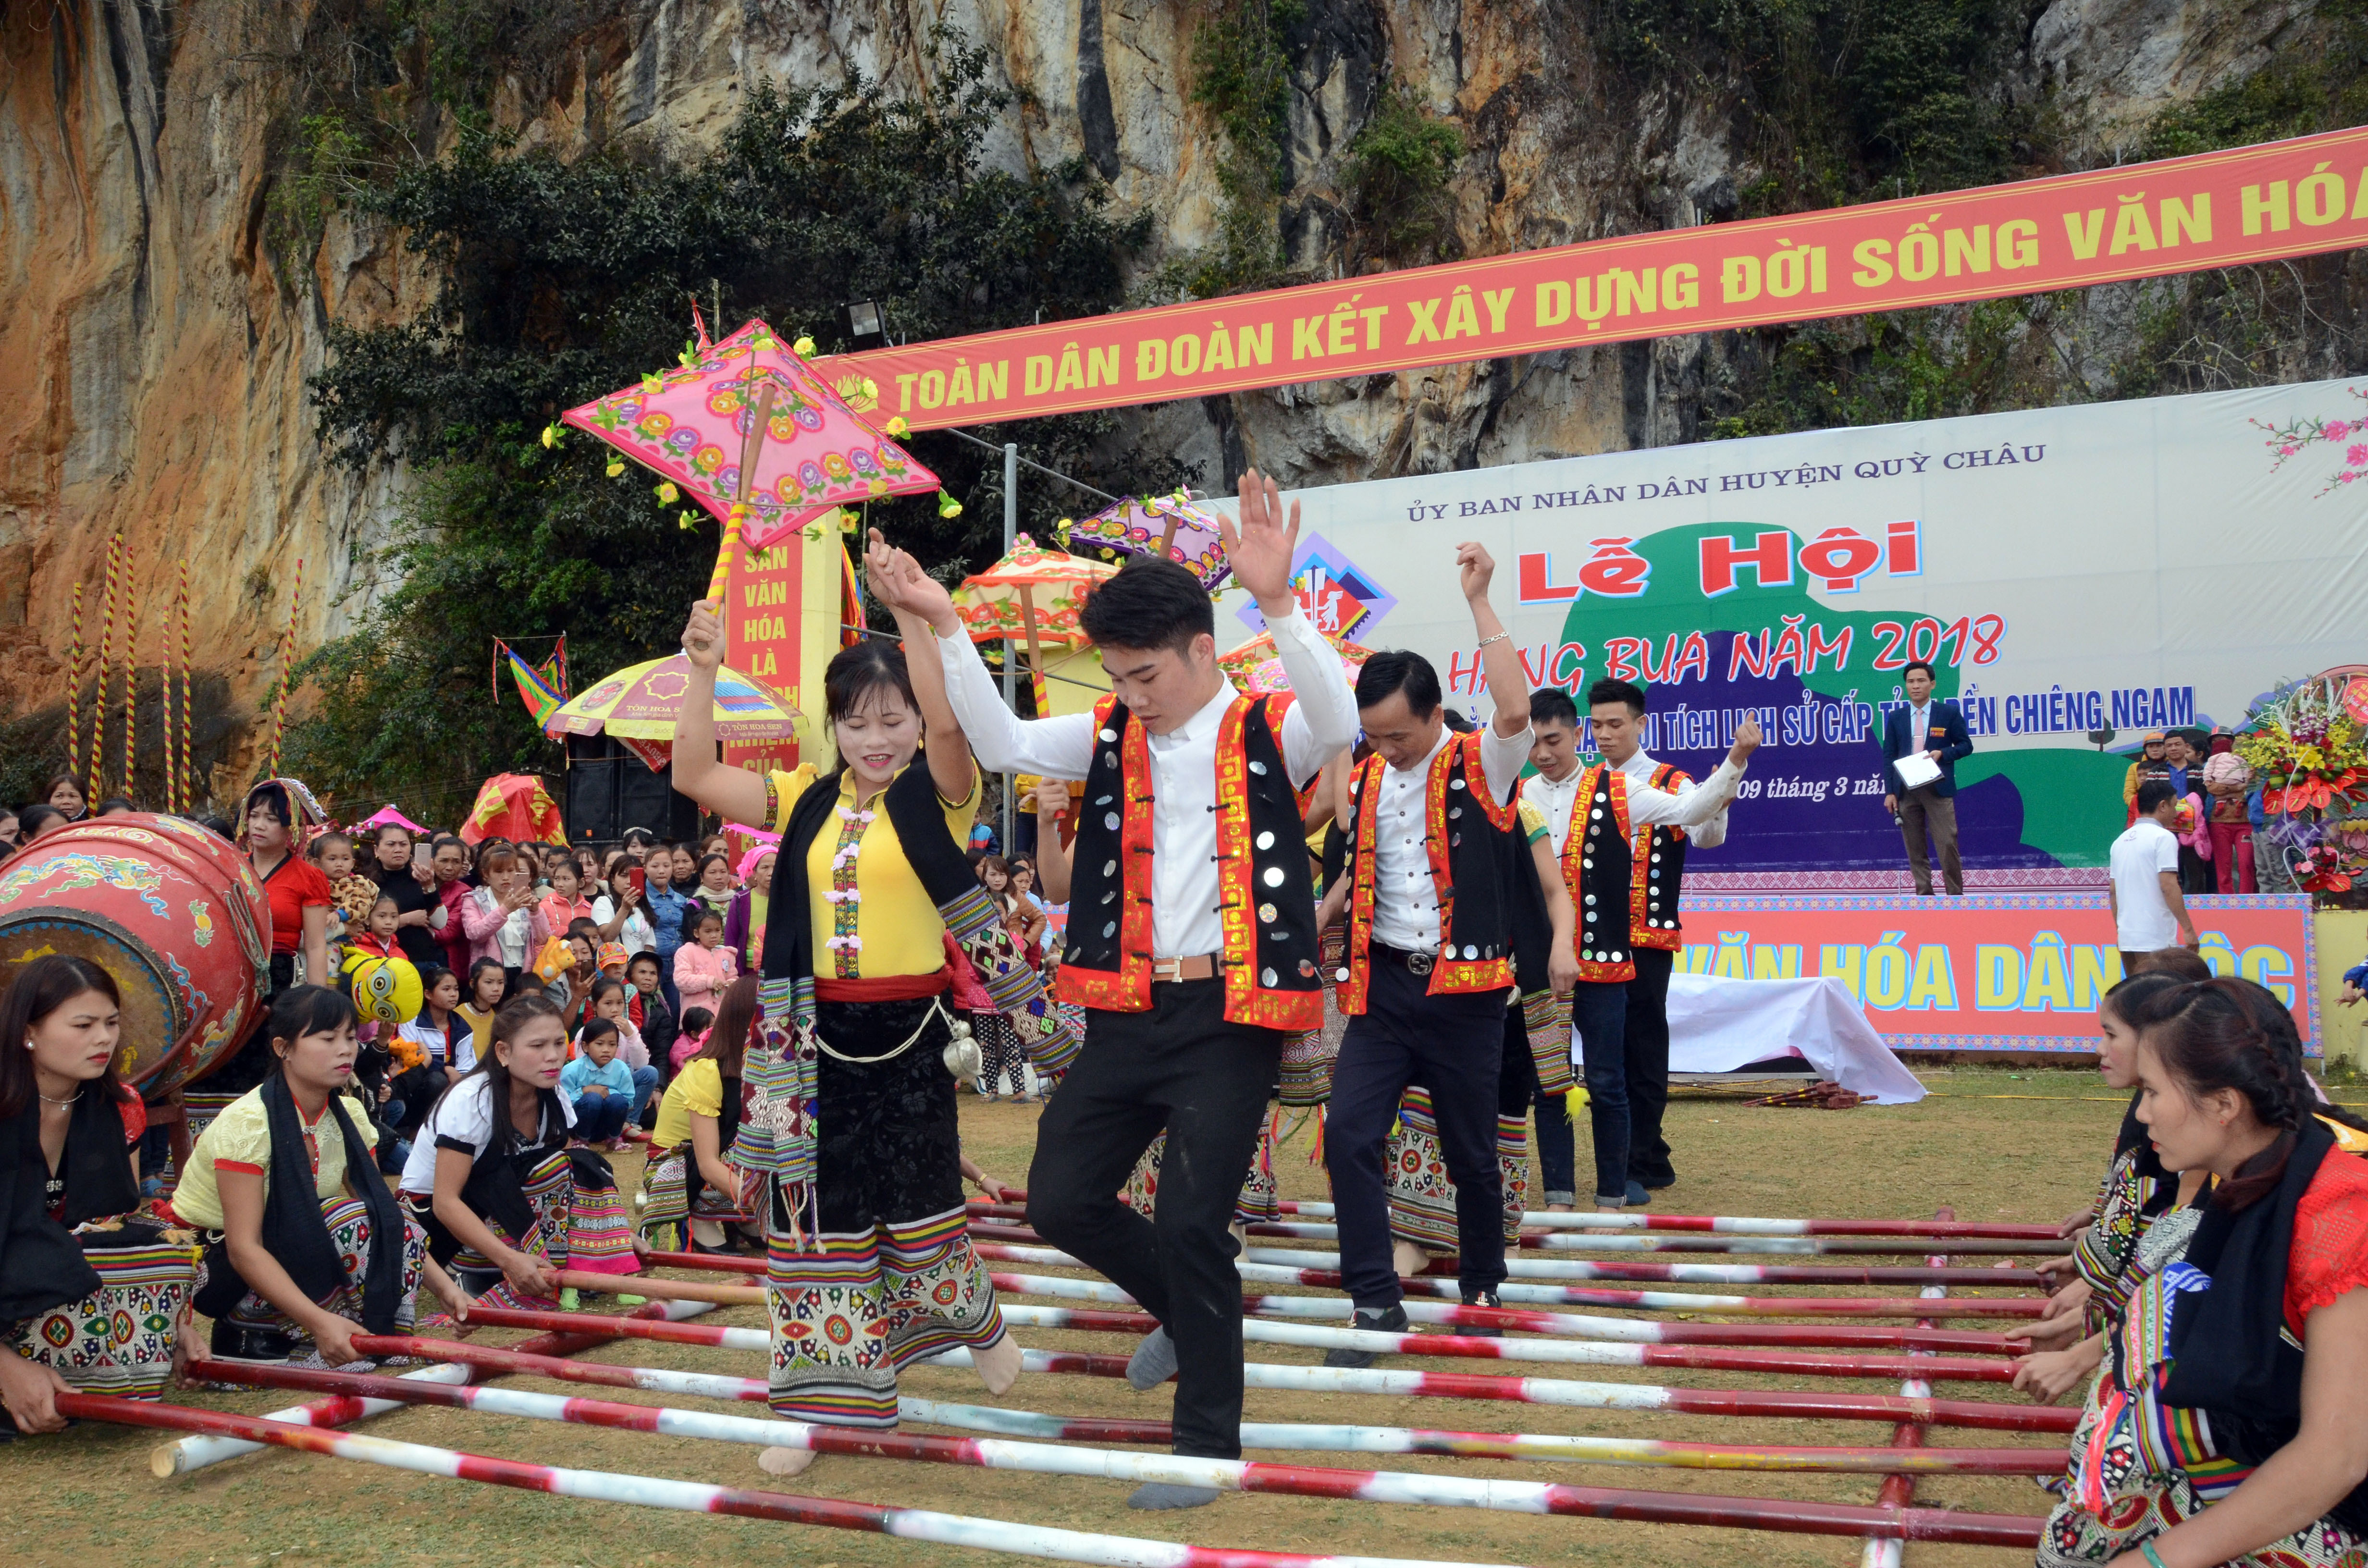 Đội thi nhảy sạp của xã Châu Tiến trình diễn vũ điệu đặc sắc, giành giải nhất. Ảnh: Thành Chung